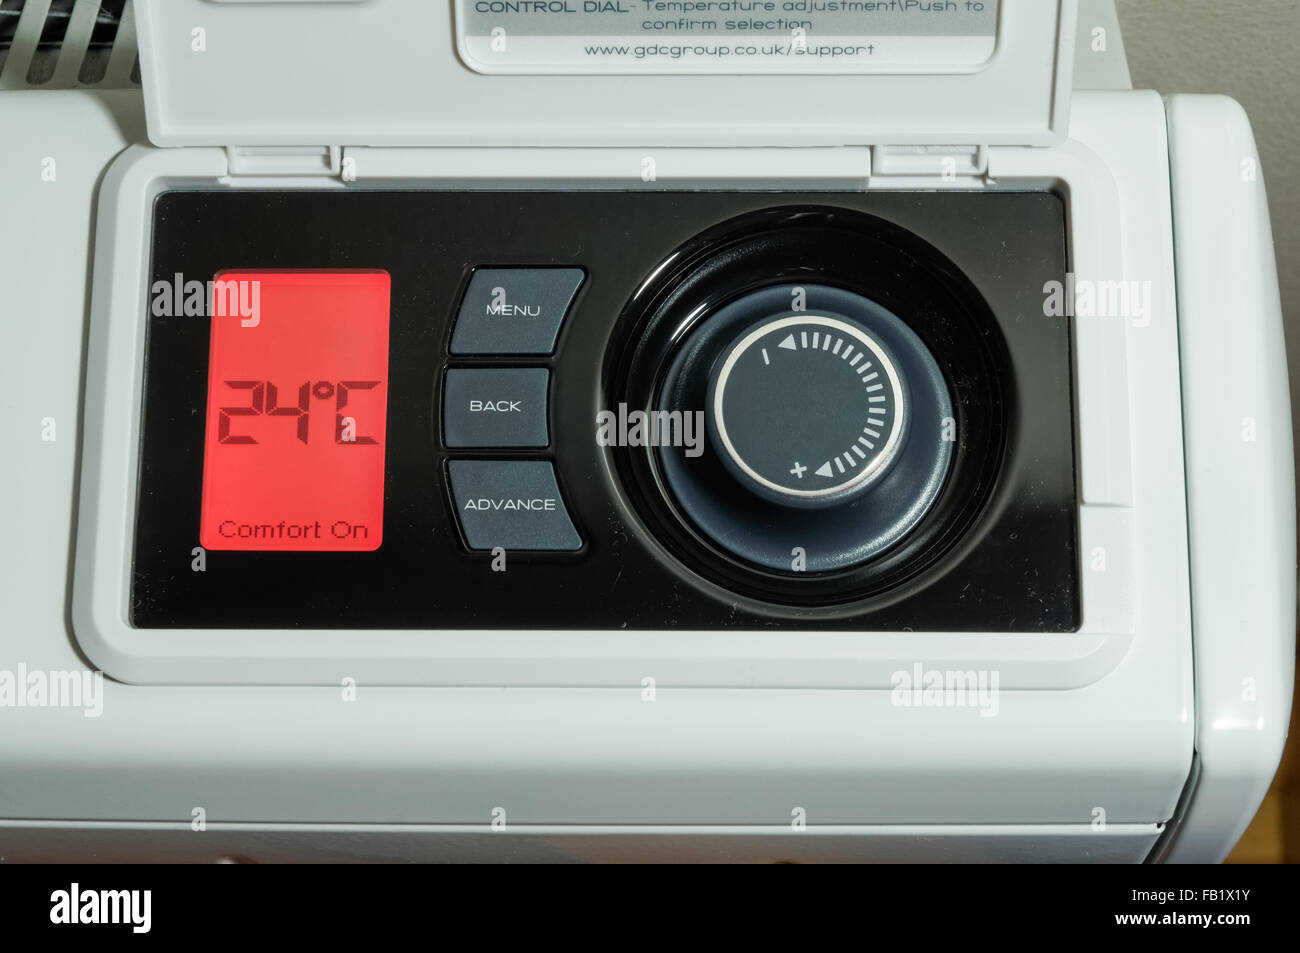 Chauffage central domestique, radiateur de stockage électrique, affichage LCD et panneau de commande de température réglé sur une température de 24 degrés celsius Banque D'Images